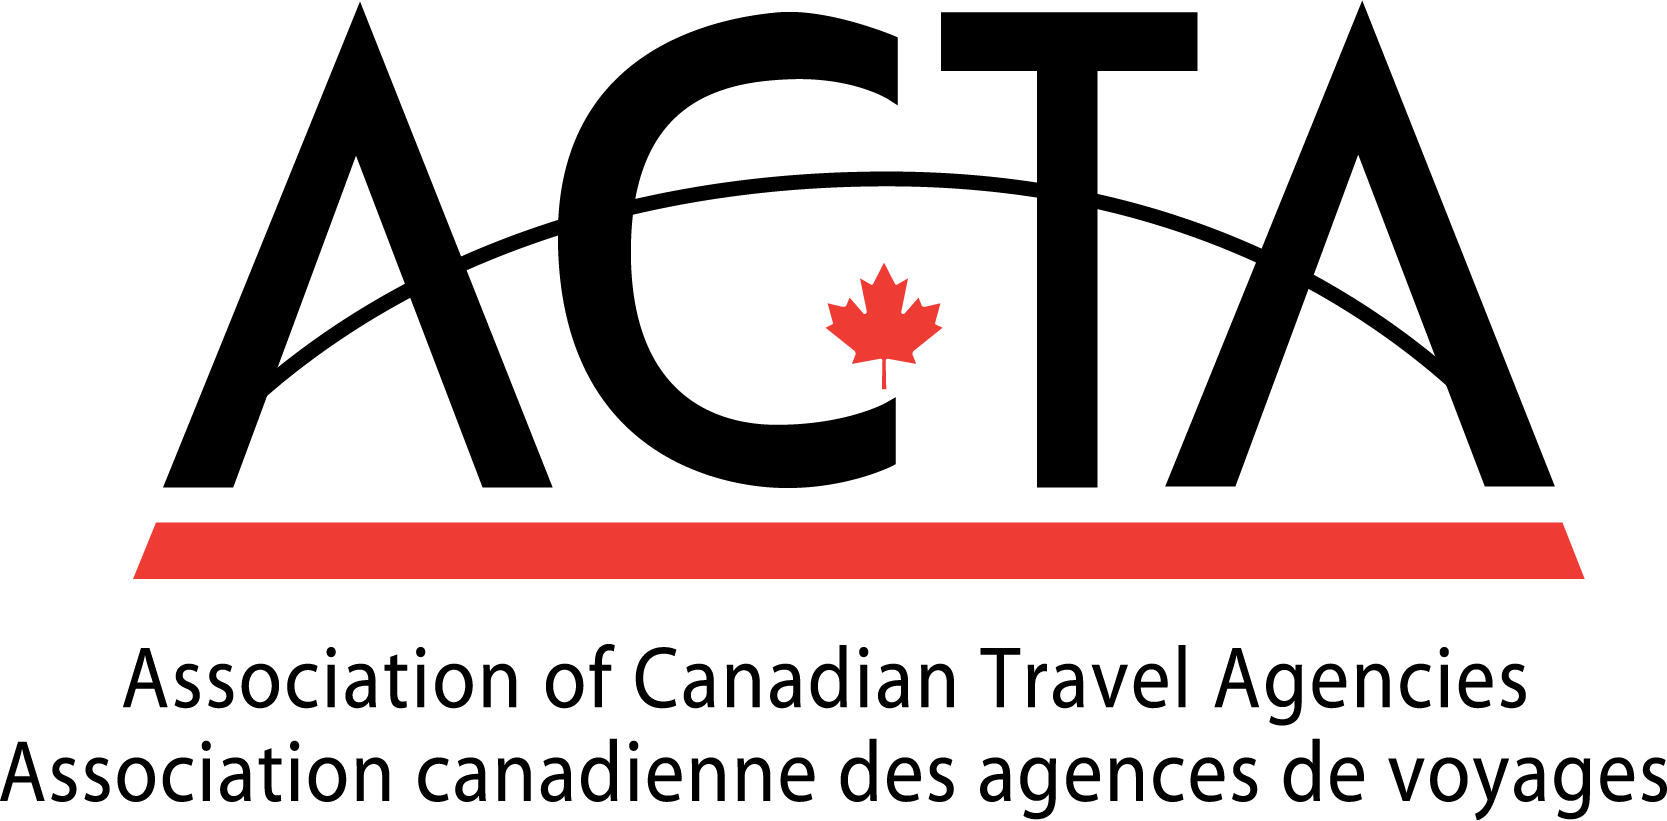 ACTA-Association of Canadian Travel Agencies